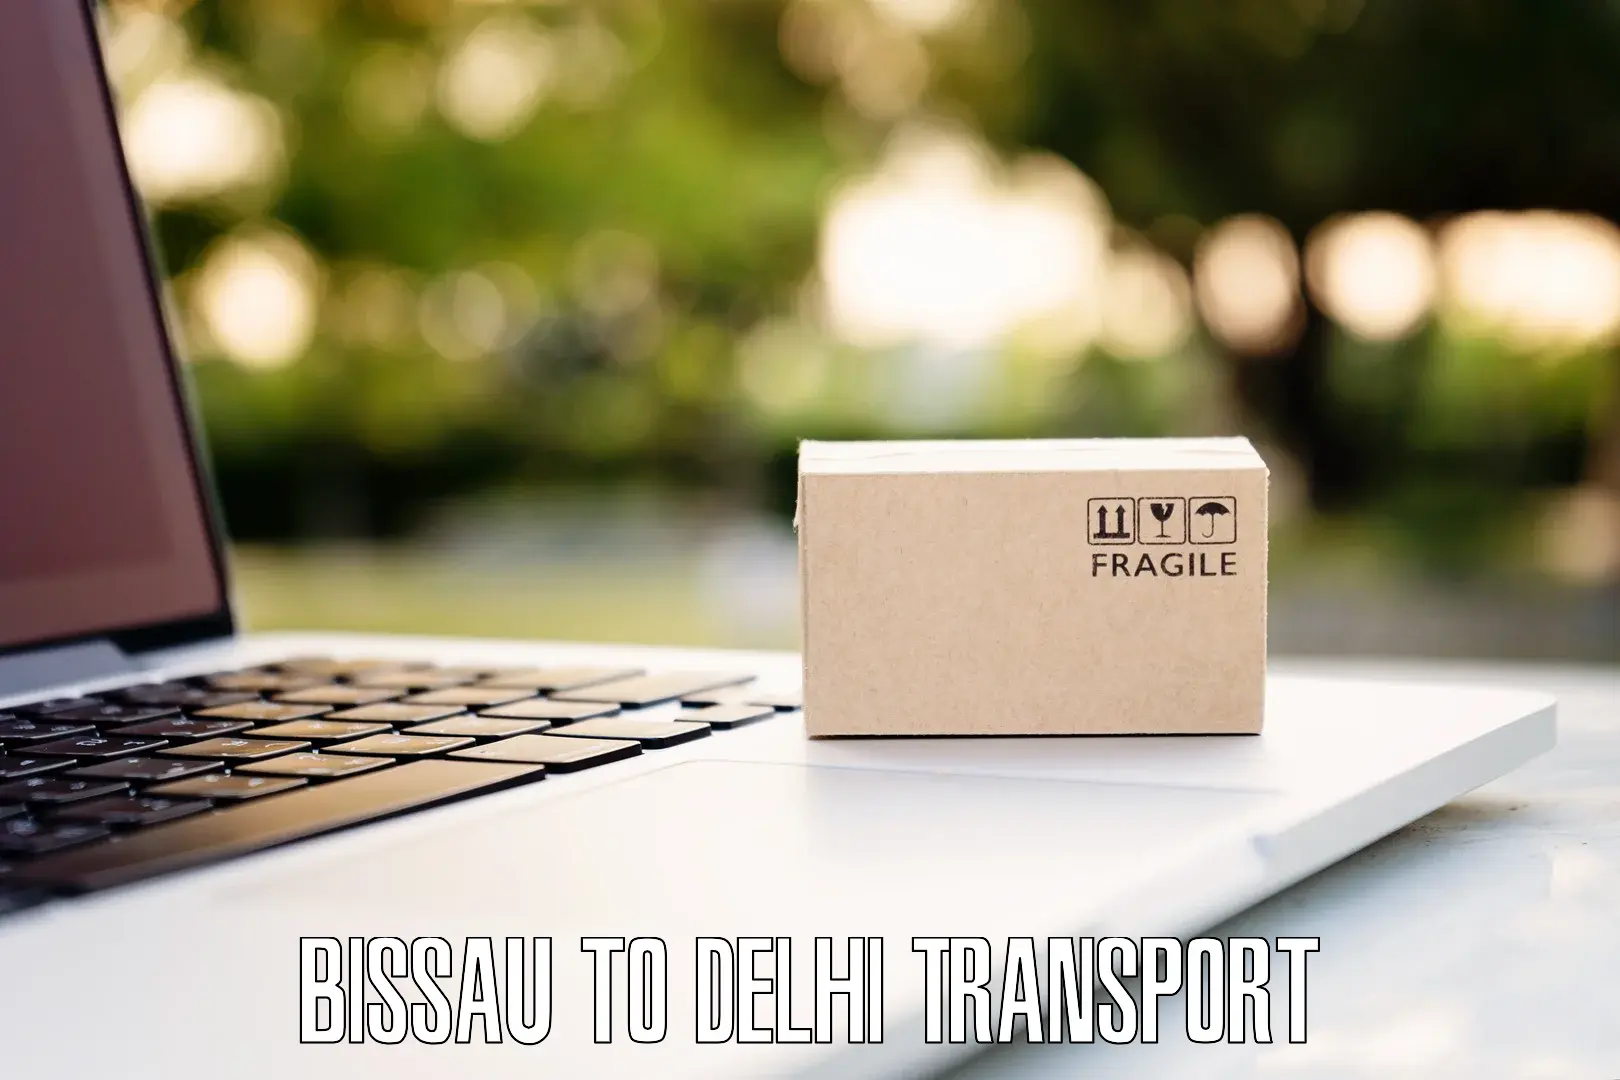 Transport in sharing Bissau to Delhi